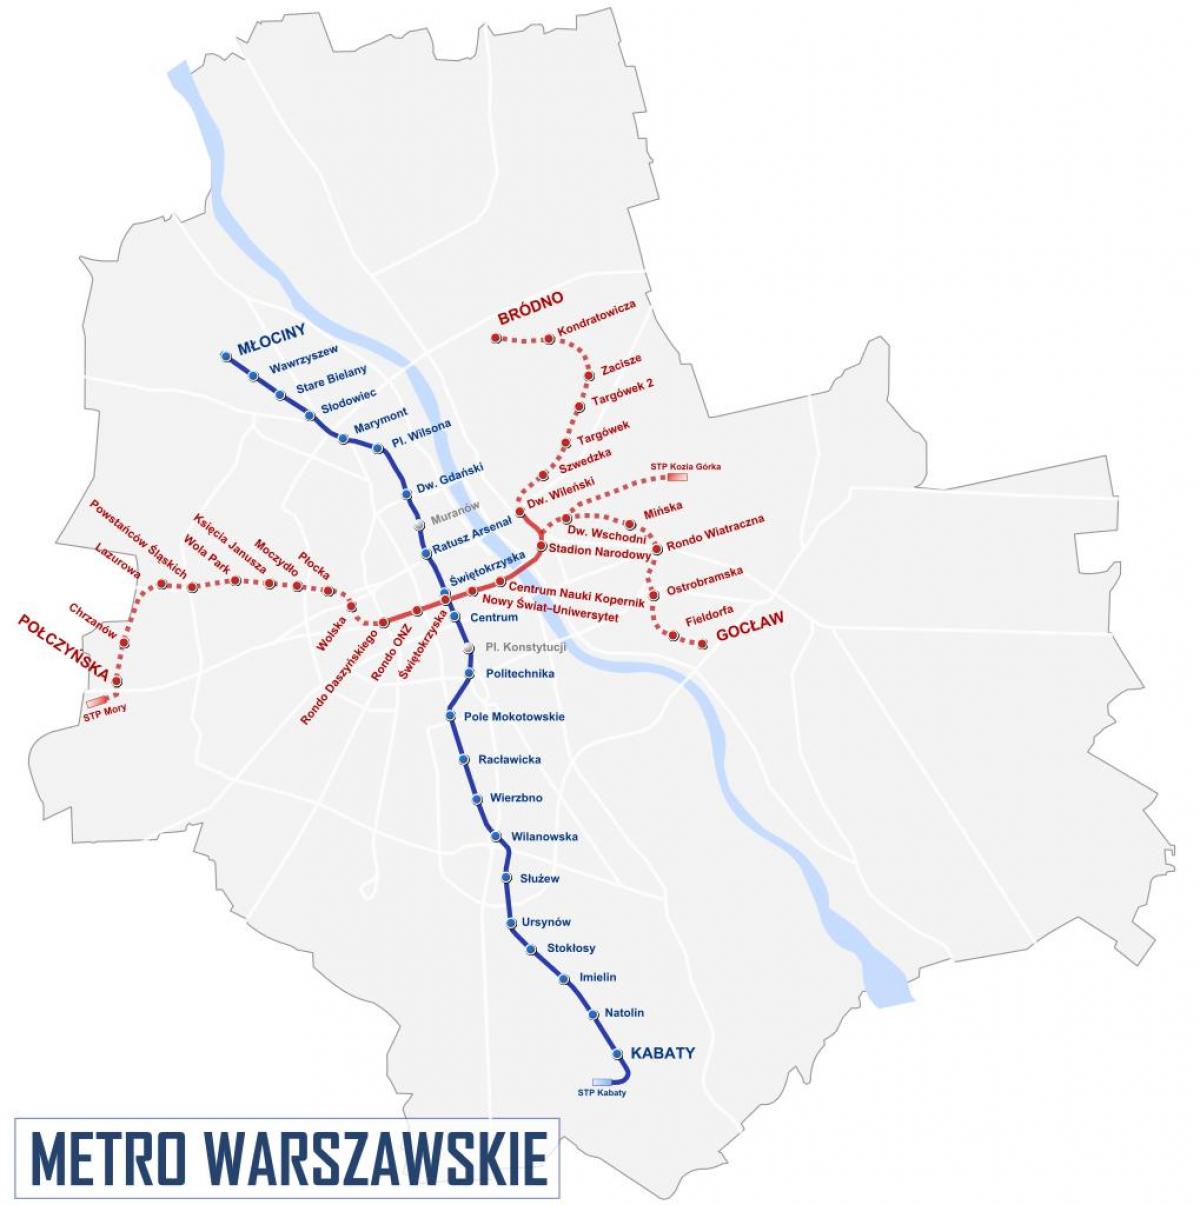 Mapa ng Warsaw metro 2016